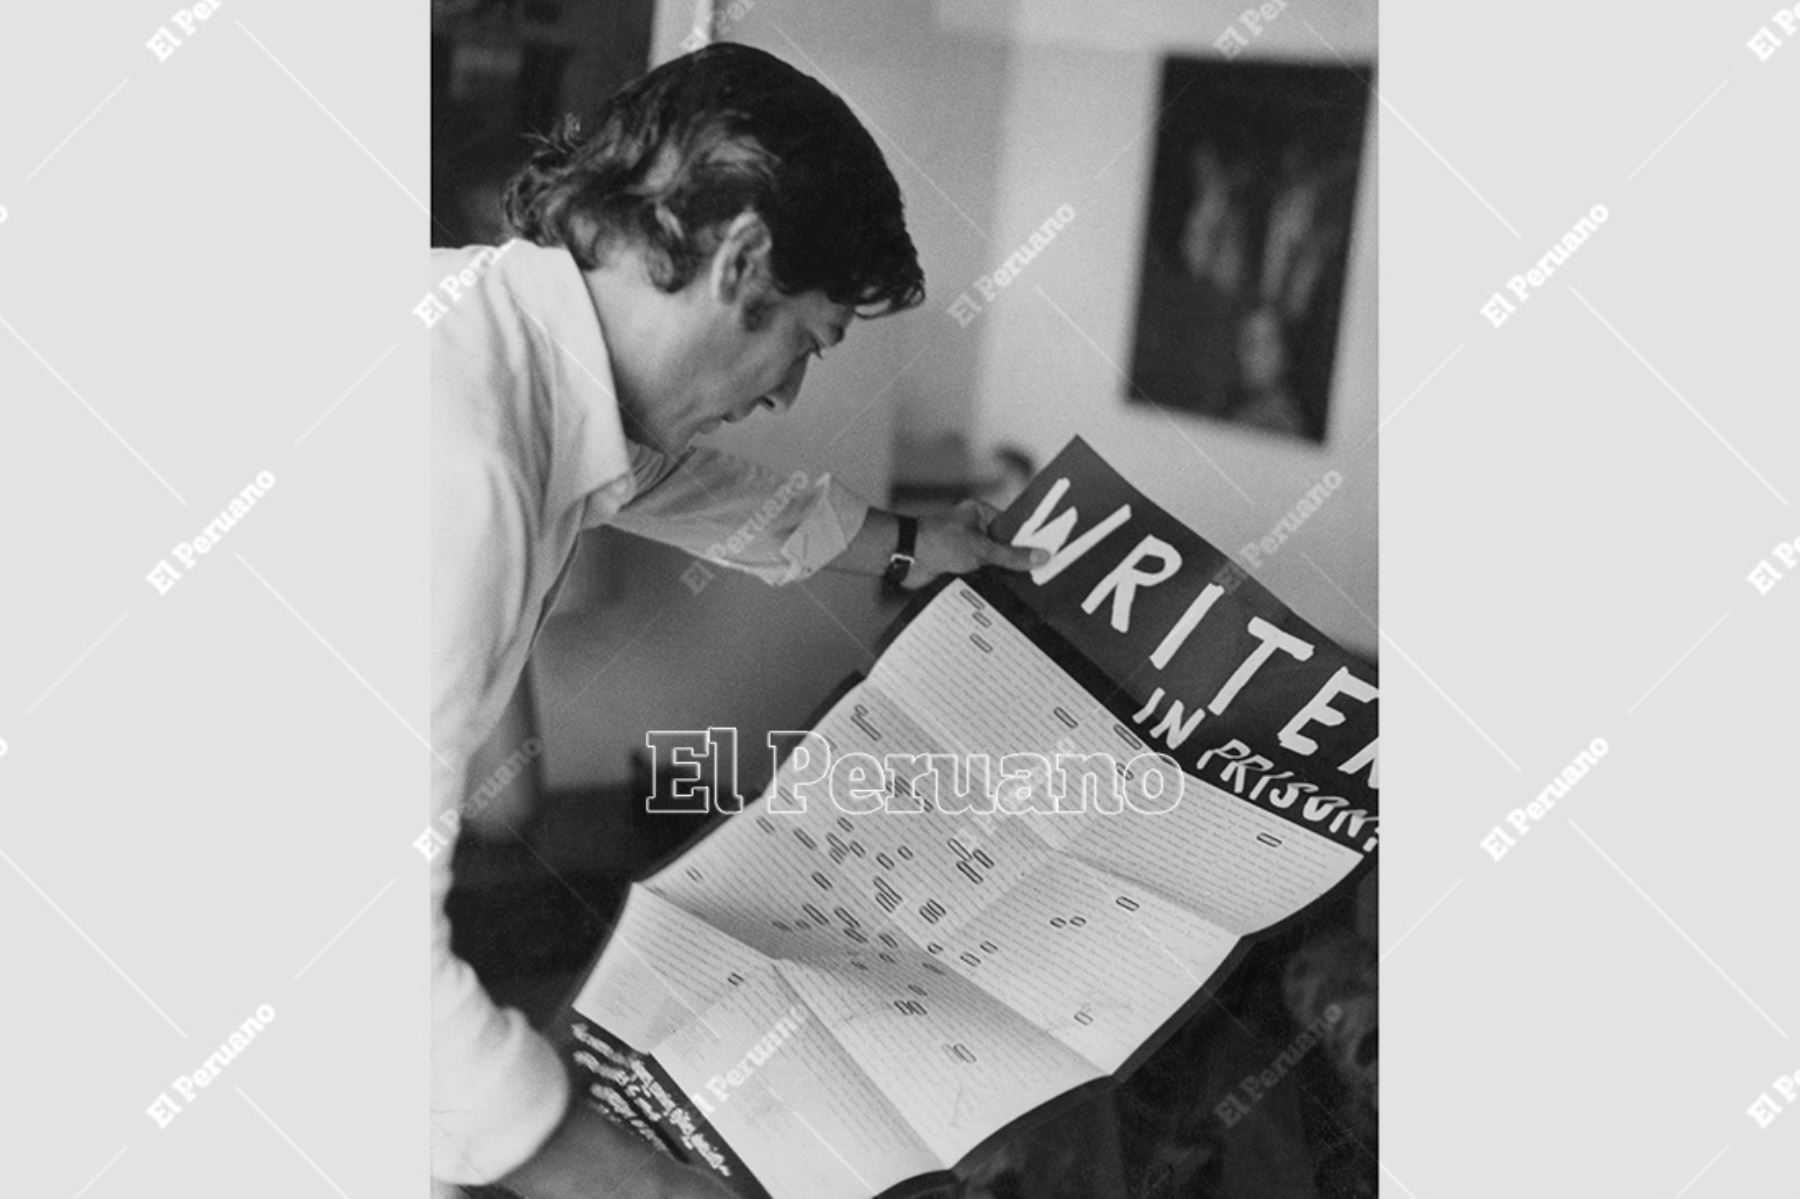 Lima - 5 setiembre 1976 / Mario Vargas Llosa muestra el póster "escritores en prisión" editado por el Pen Club Internacional. Foto: Archivo Histórico de El Peruano